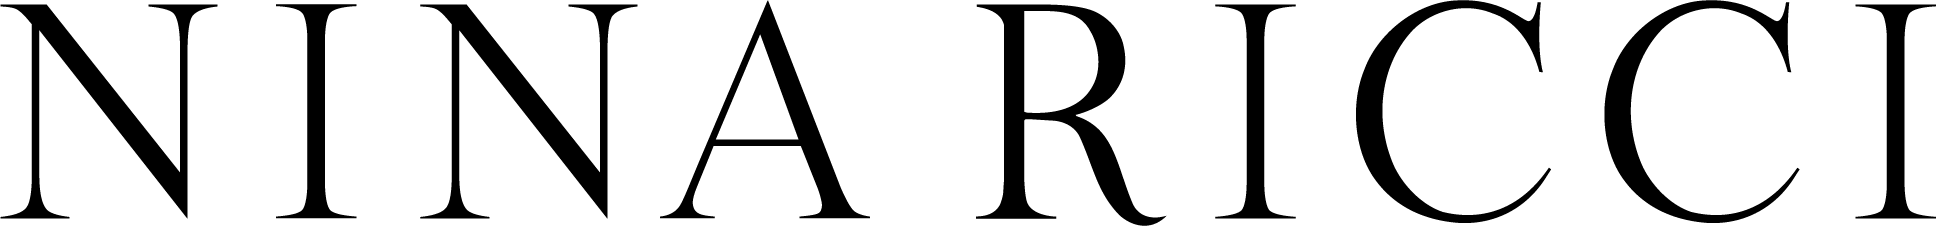 logo noir NR